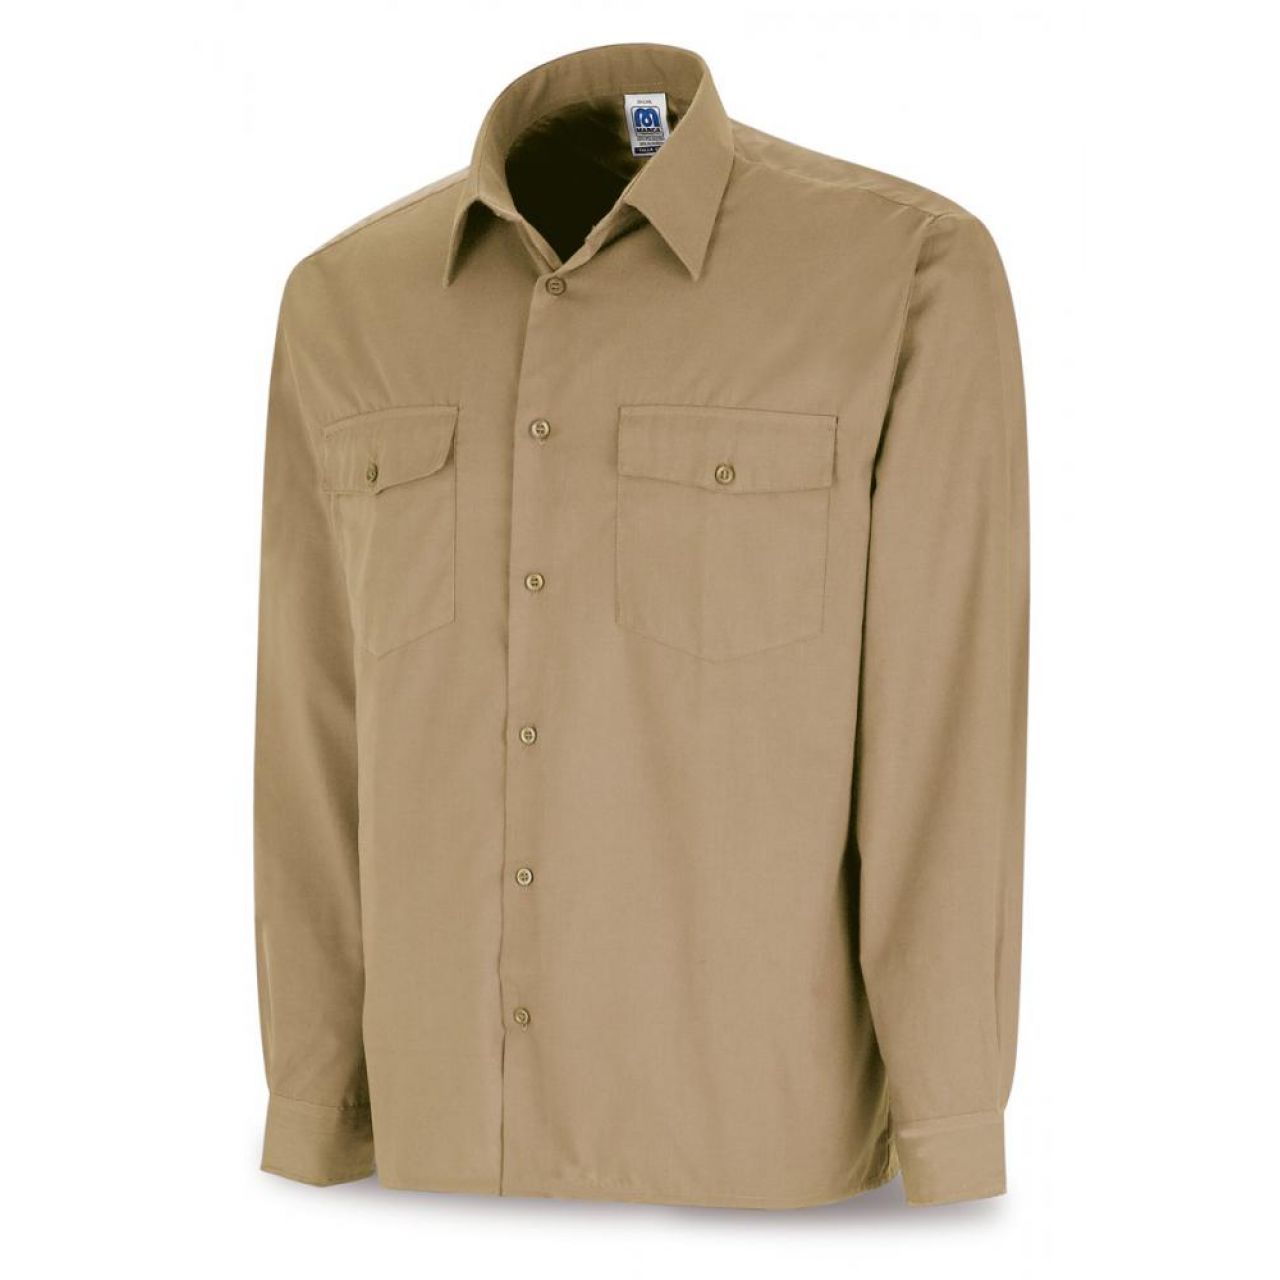 388CMLBE Camisa beige poliéster/algodón 95 gr. Marga larga